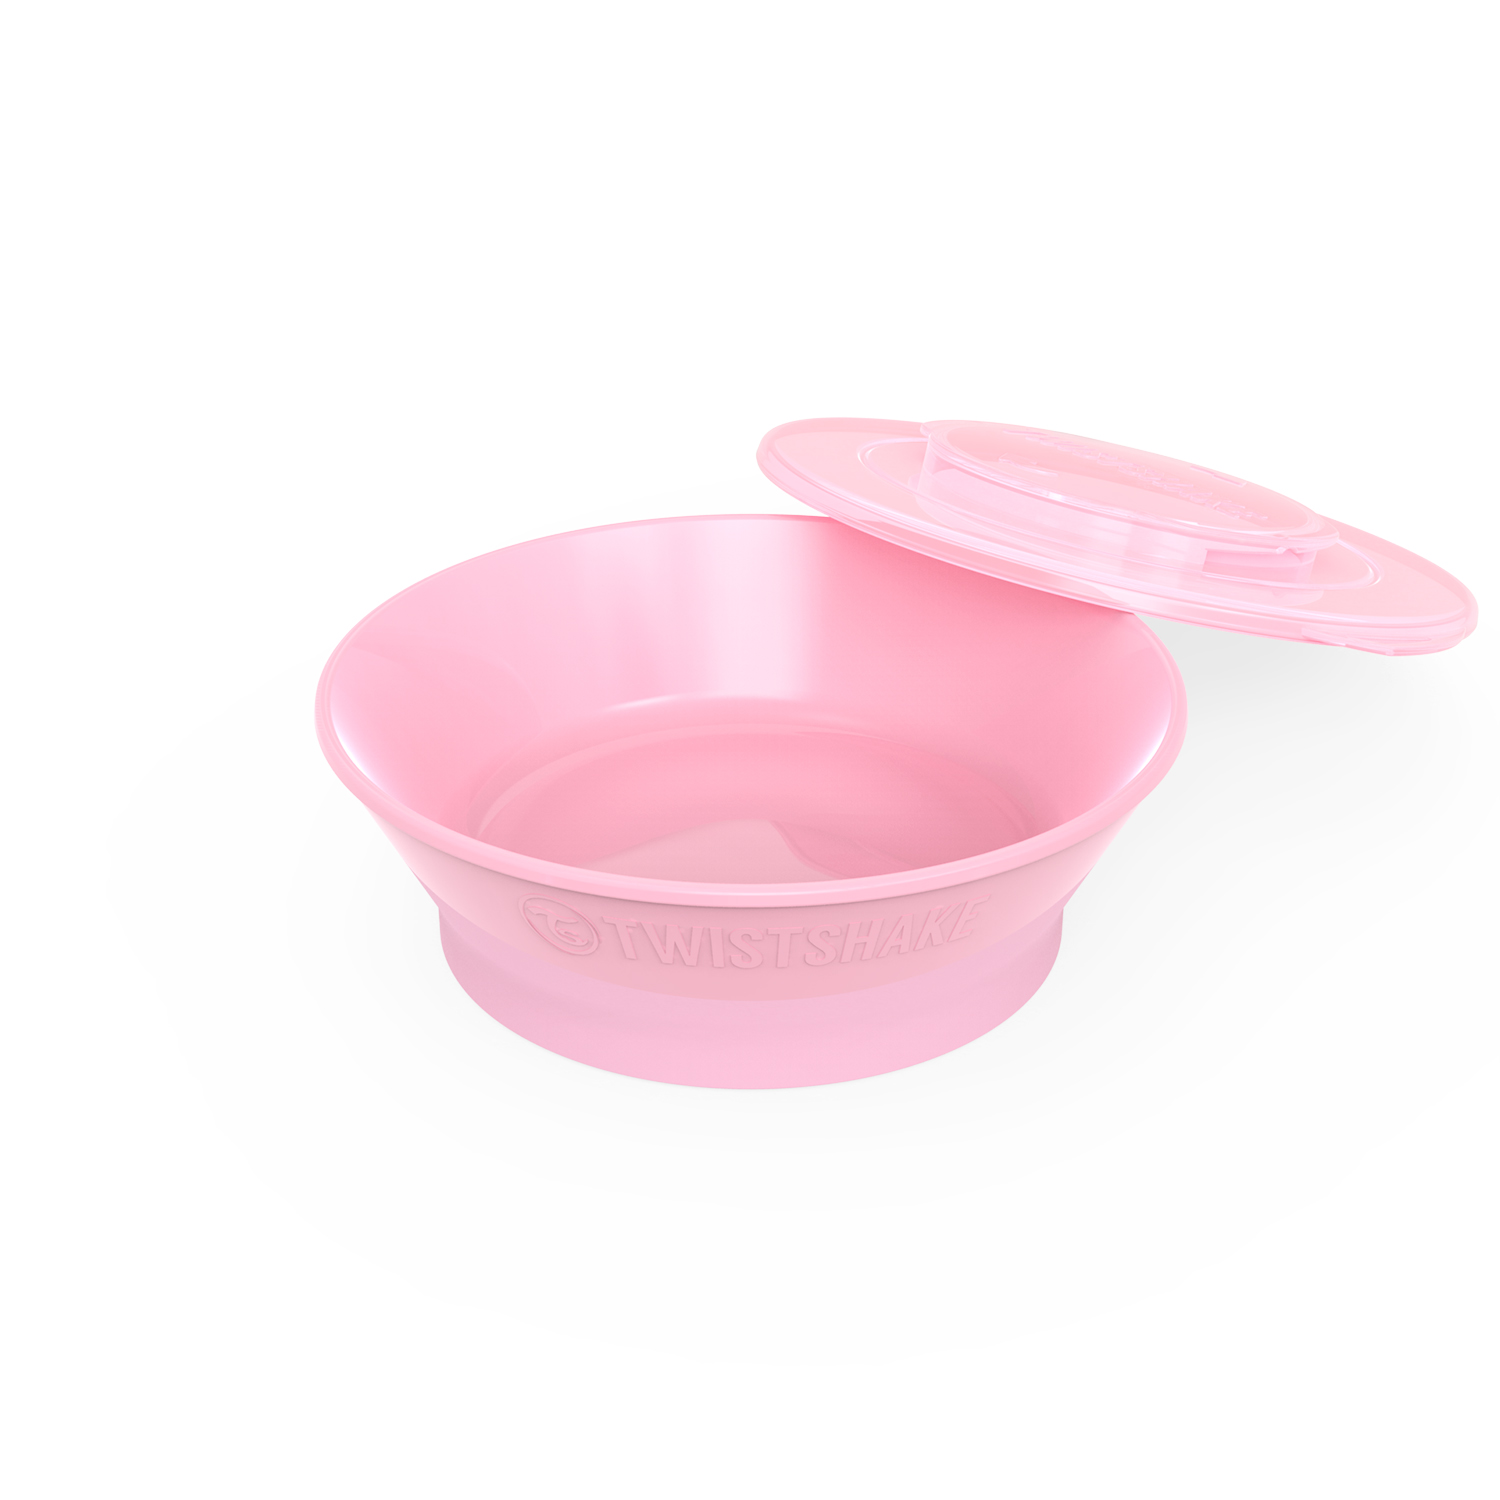 Bowl pink